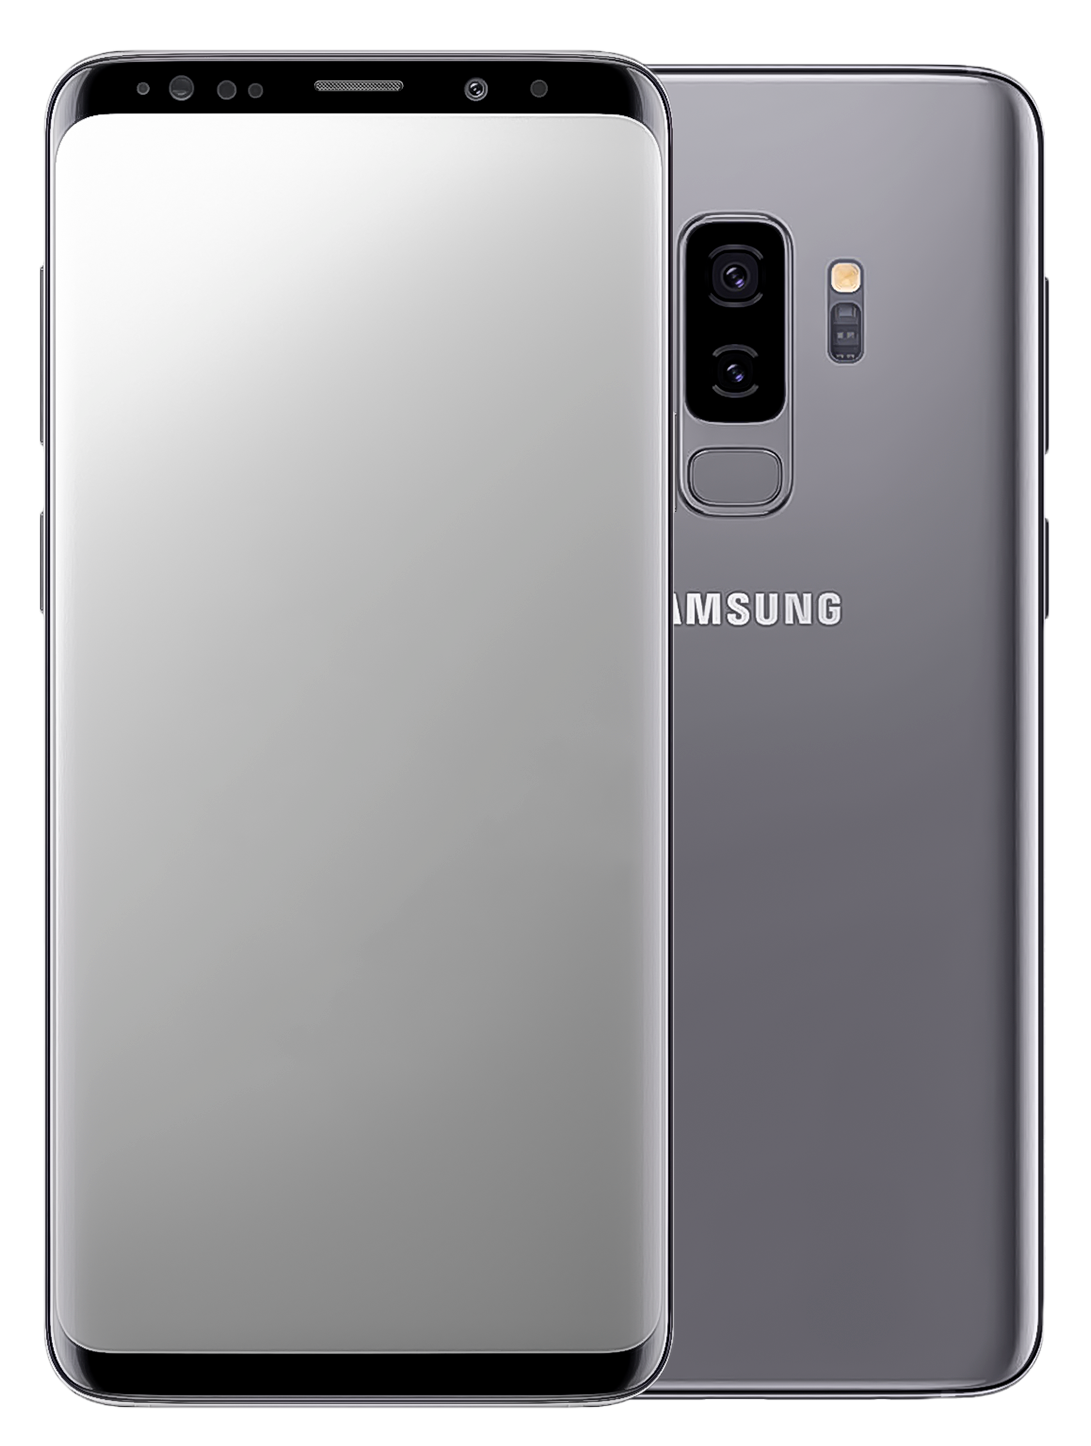 Samsung Galaxy S9+ Dual-Sim grau - Ohne Vertrag